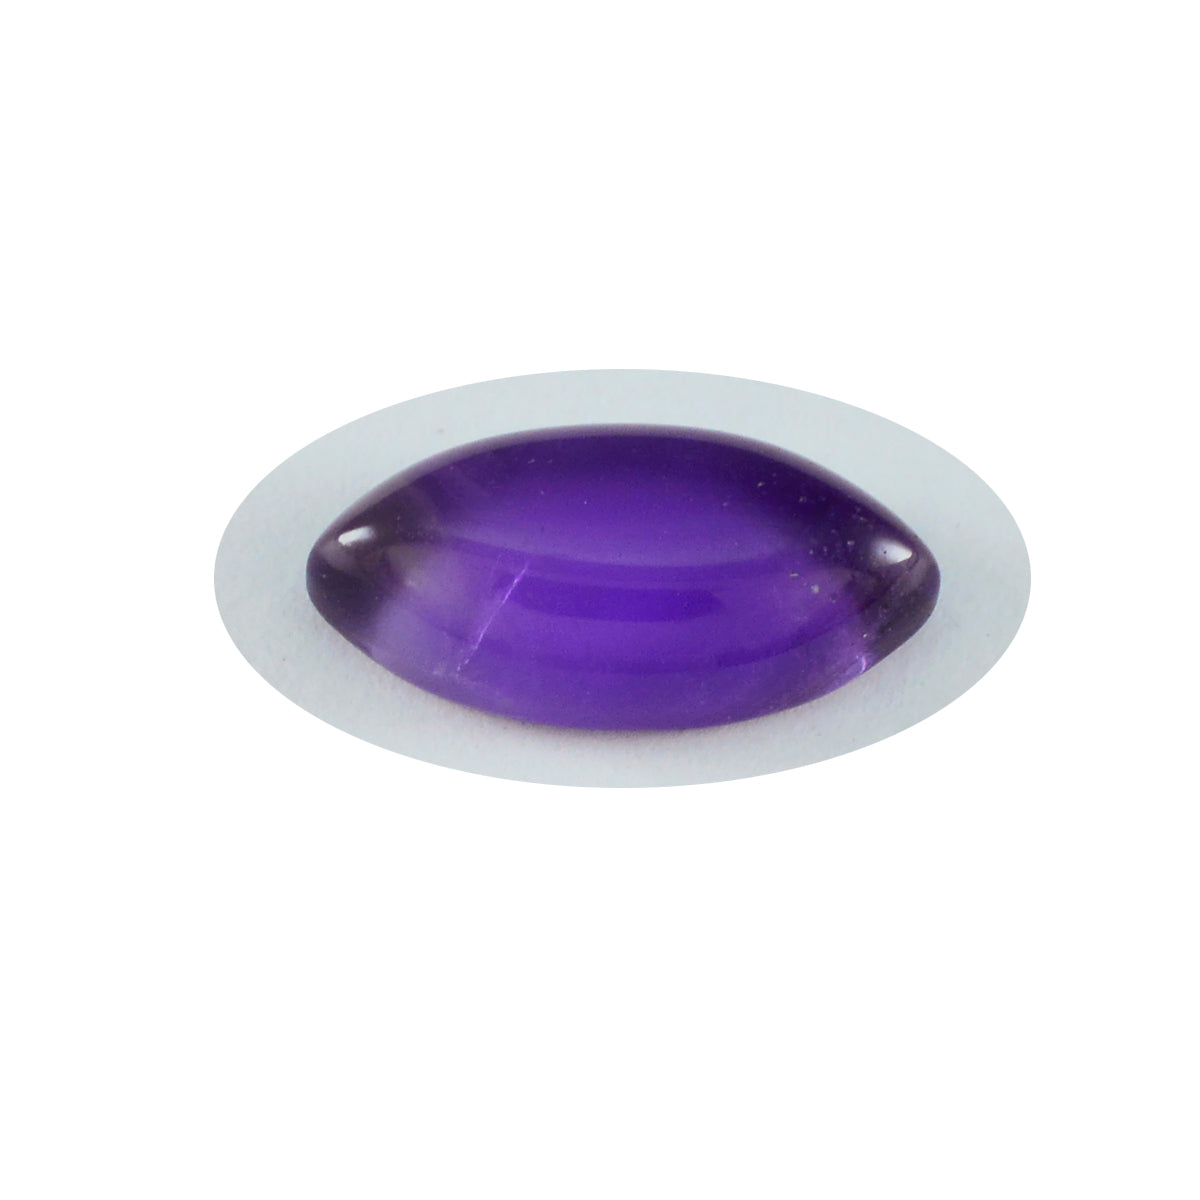 Riyogems 1PC Purple Amethyst Cabochon 11x12 mm Marquise Shape A+1 Quality Gem